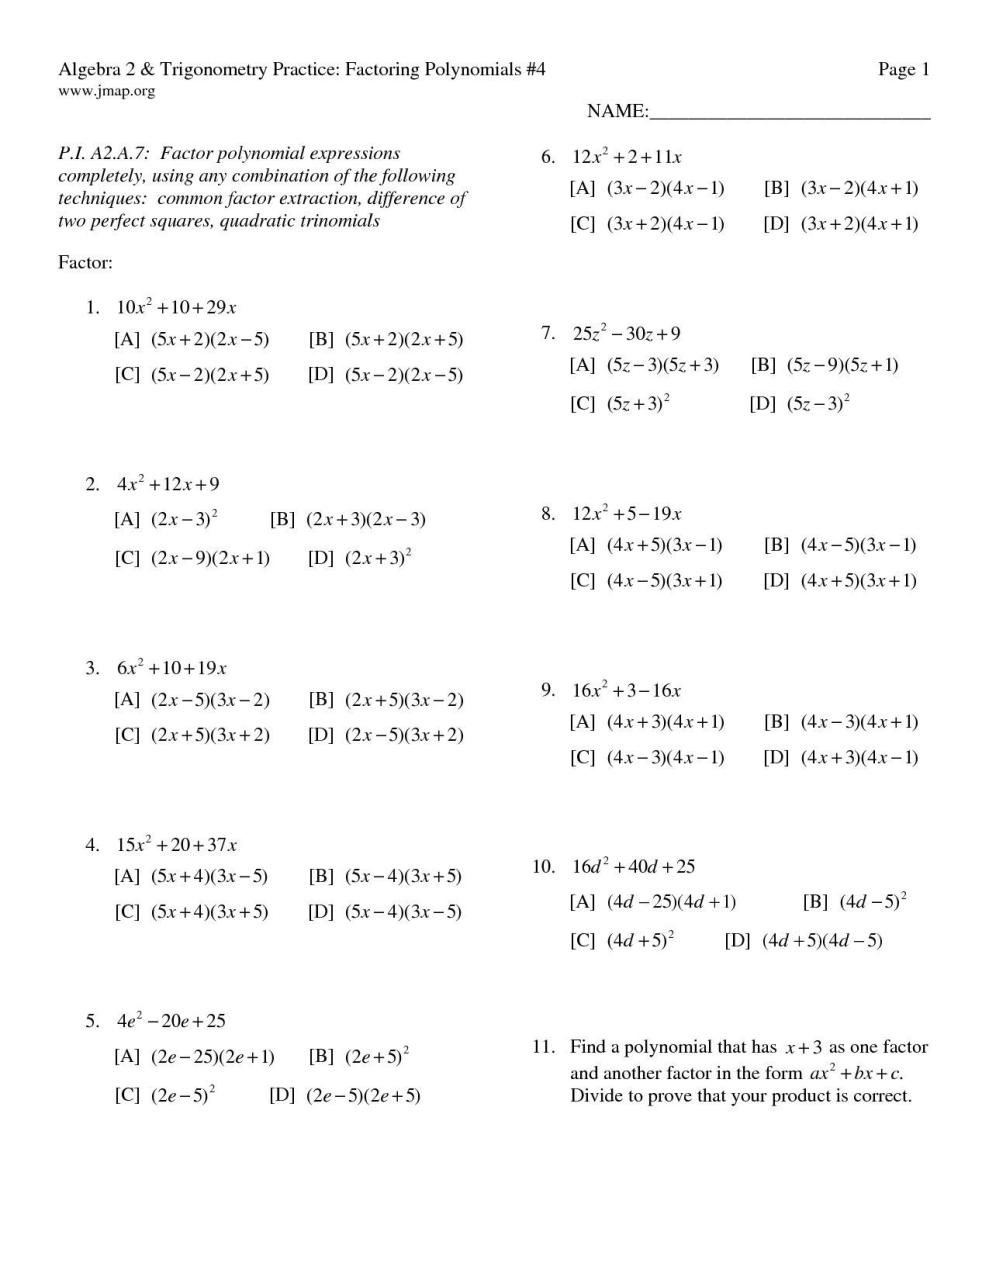 Quadratic Equation Worksheet Algebra 2